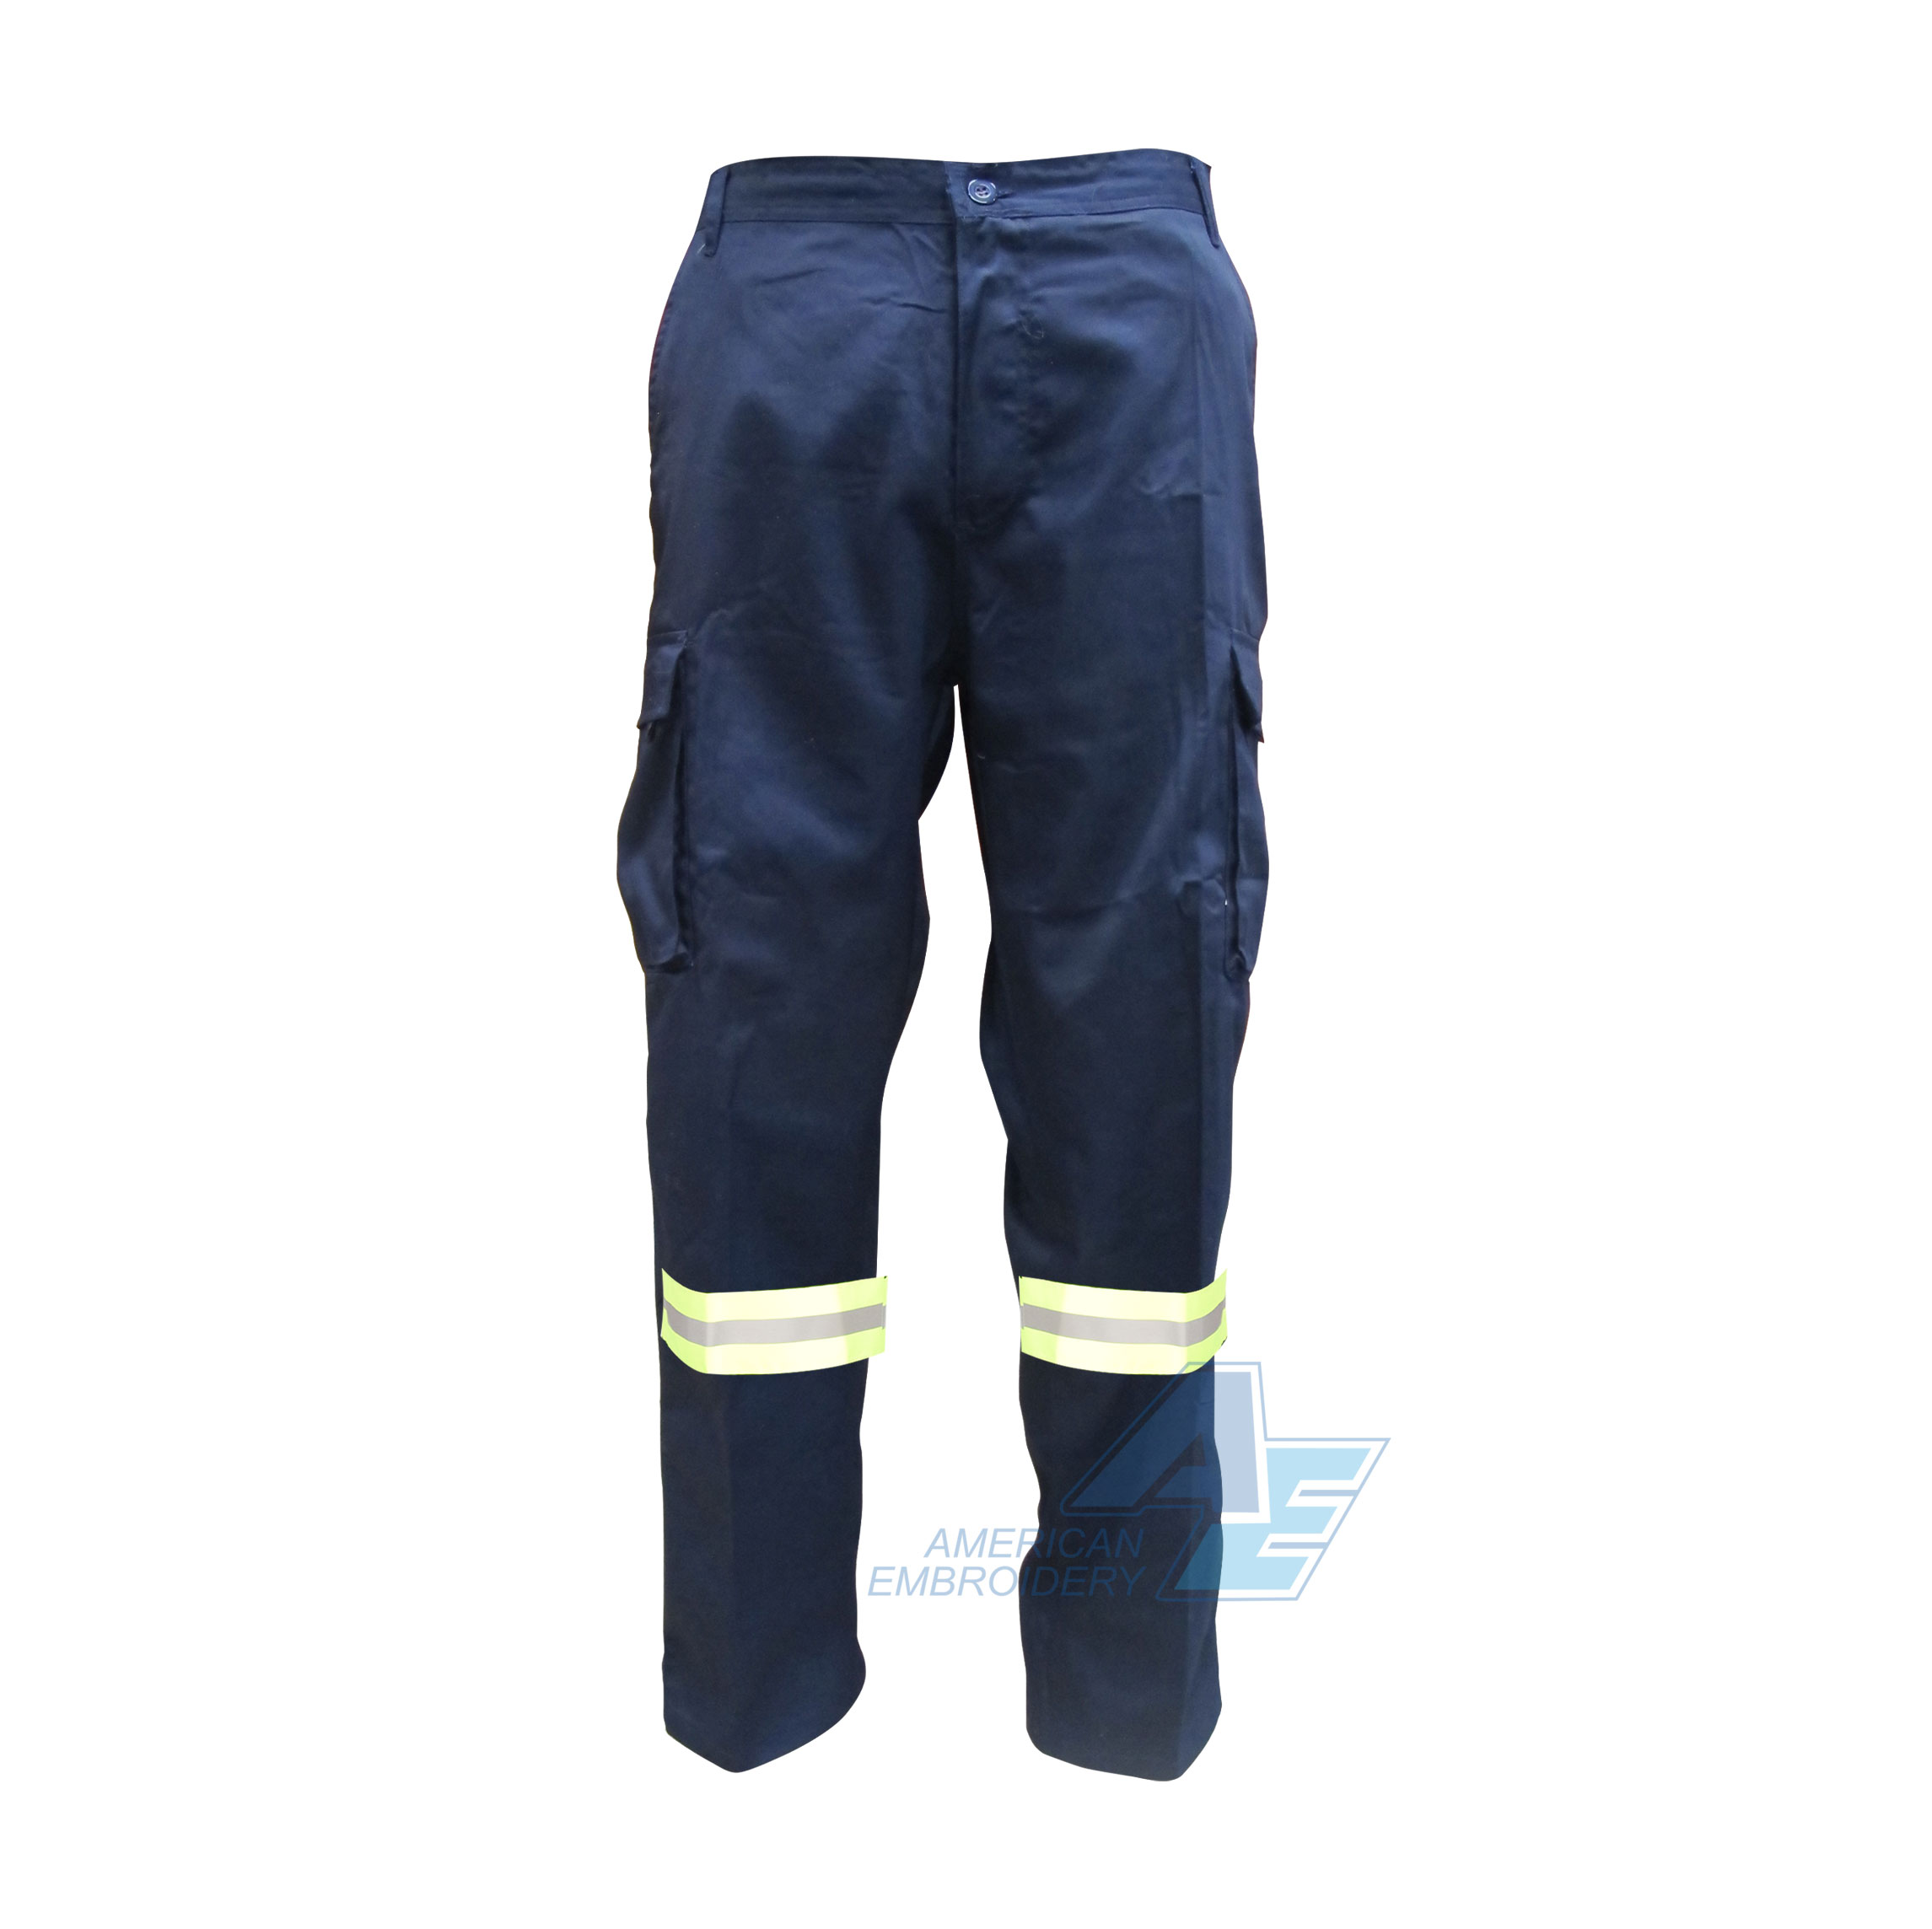 Pantalon-Cargo-Industrial-con-Reflectivo-2